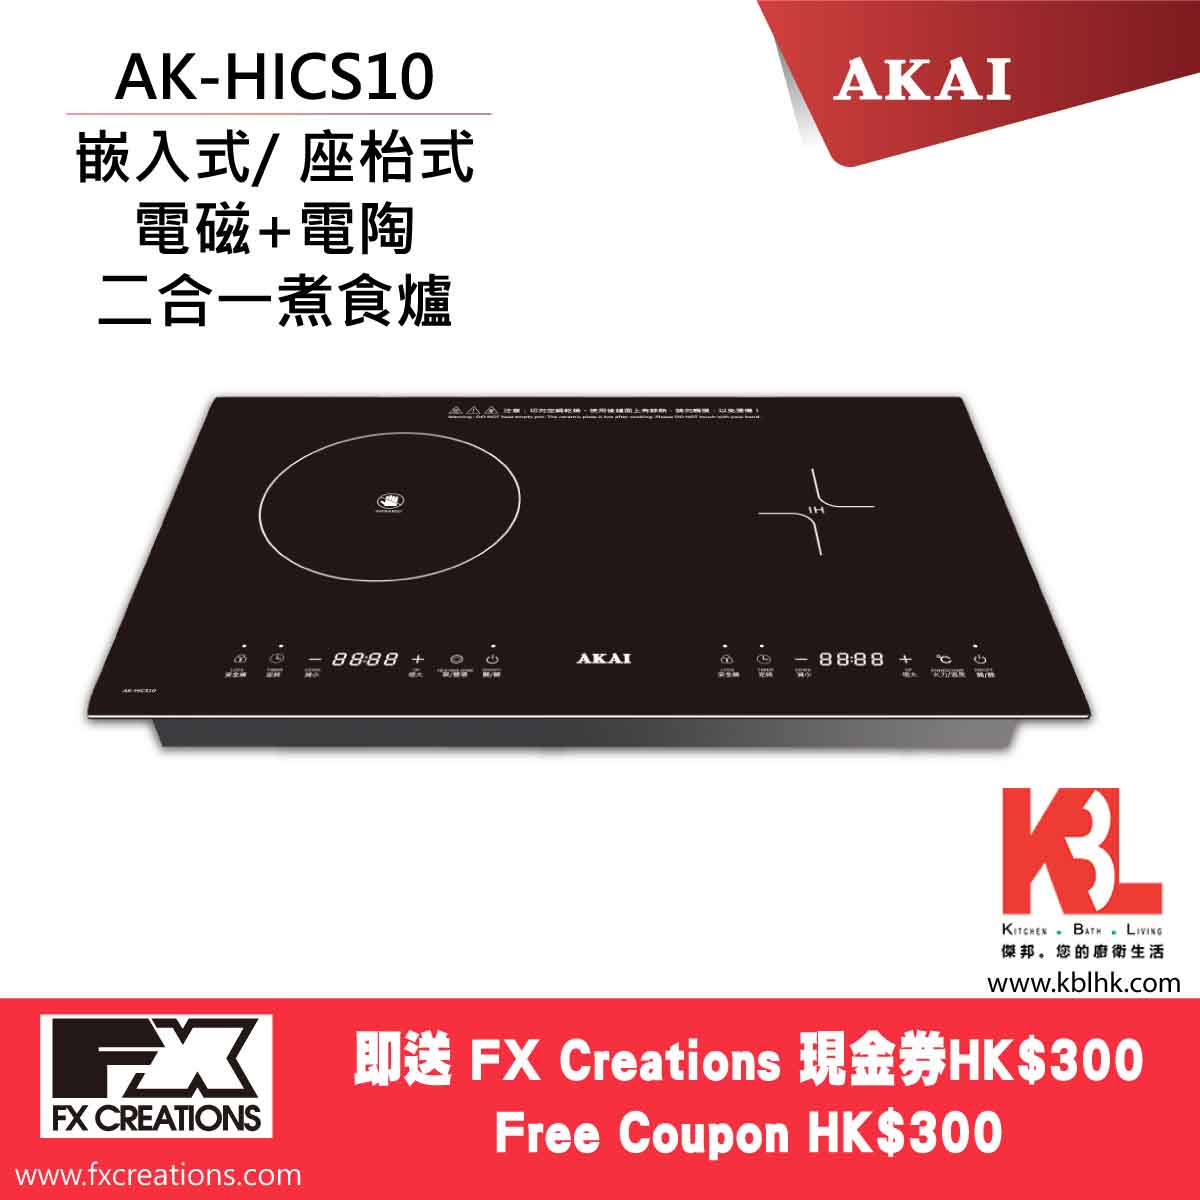 AKAI 雅佳 嵌入式電磁電陶爐 AK-HICS10（送 $300 現金券）